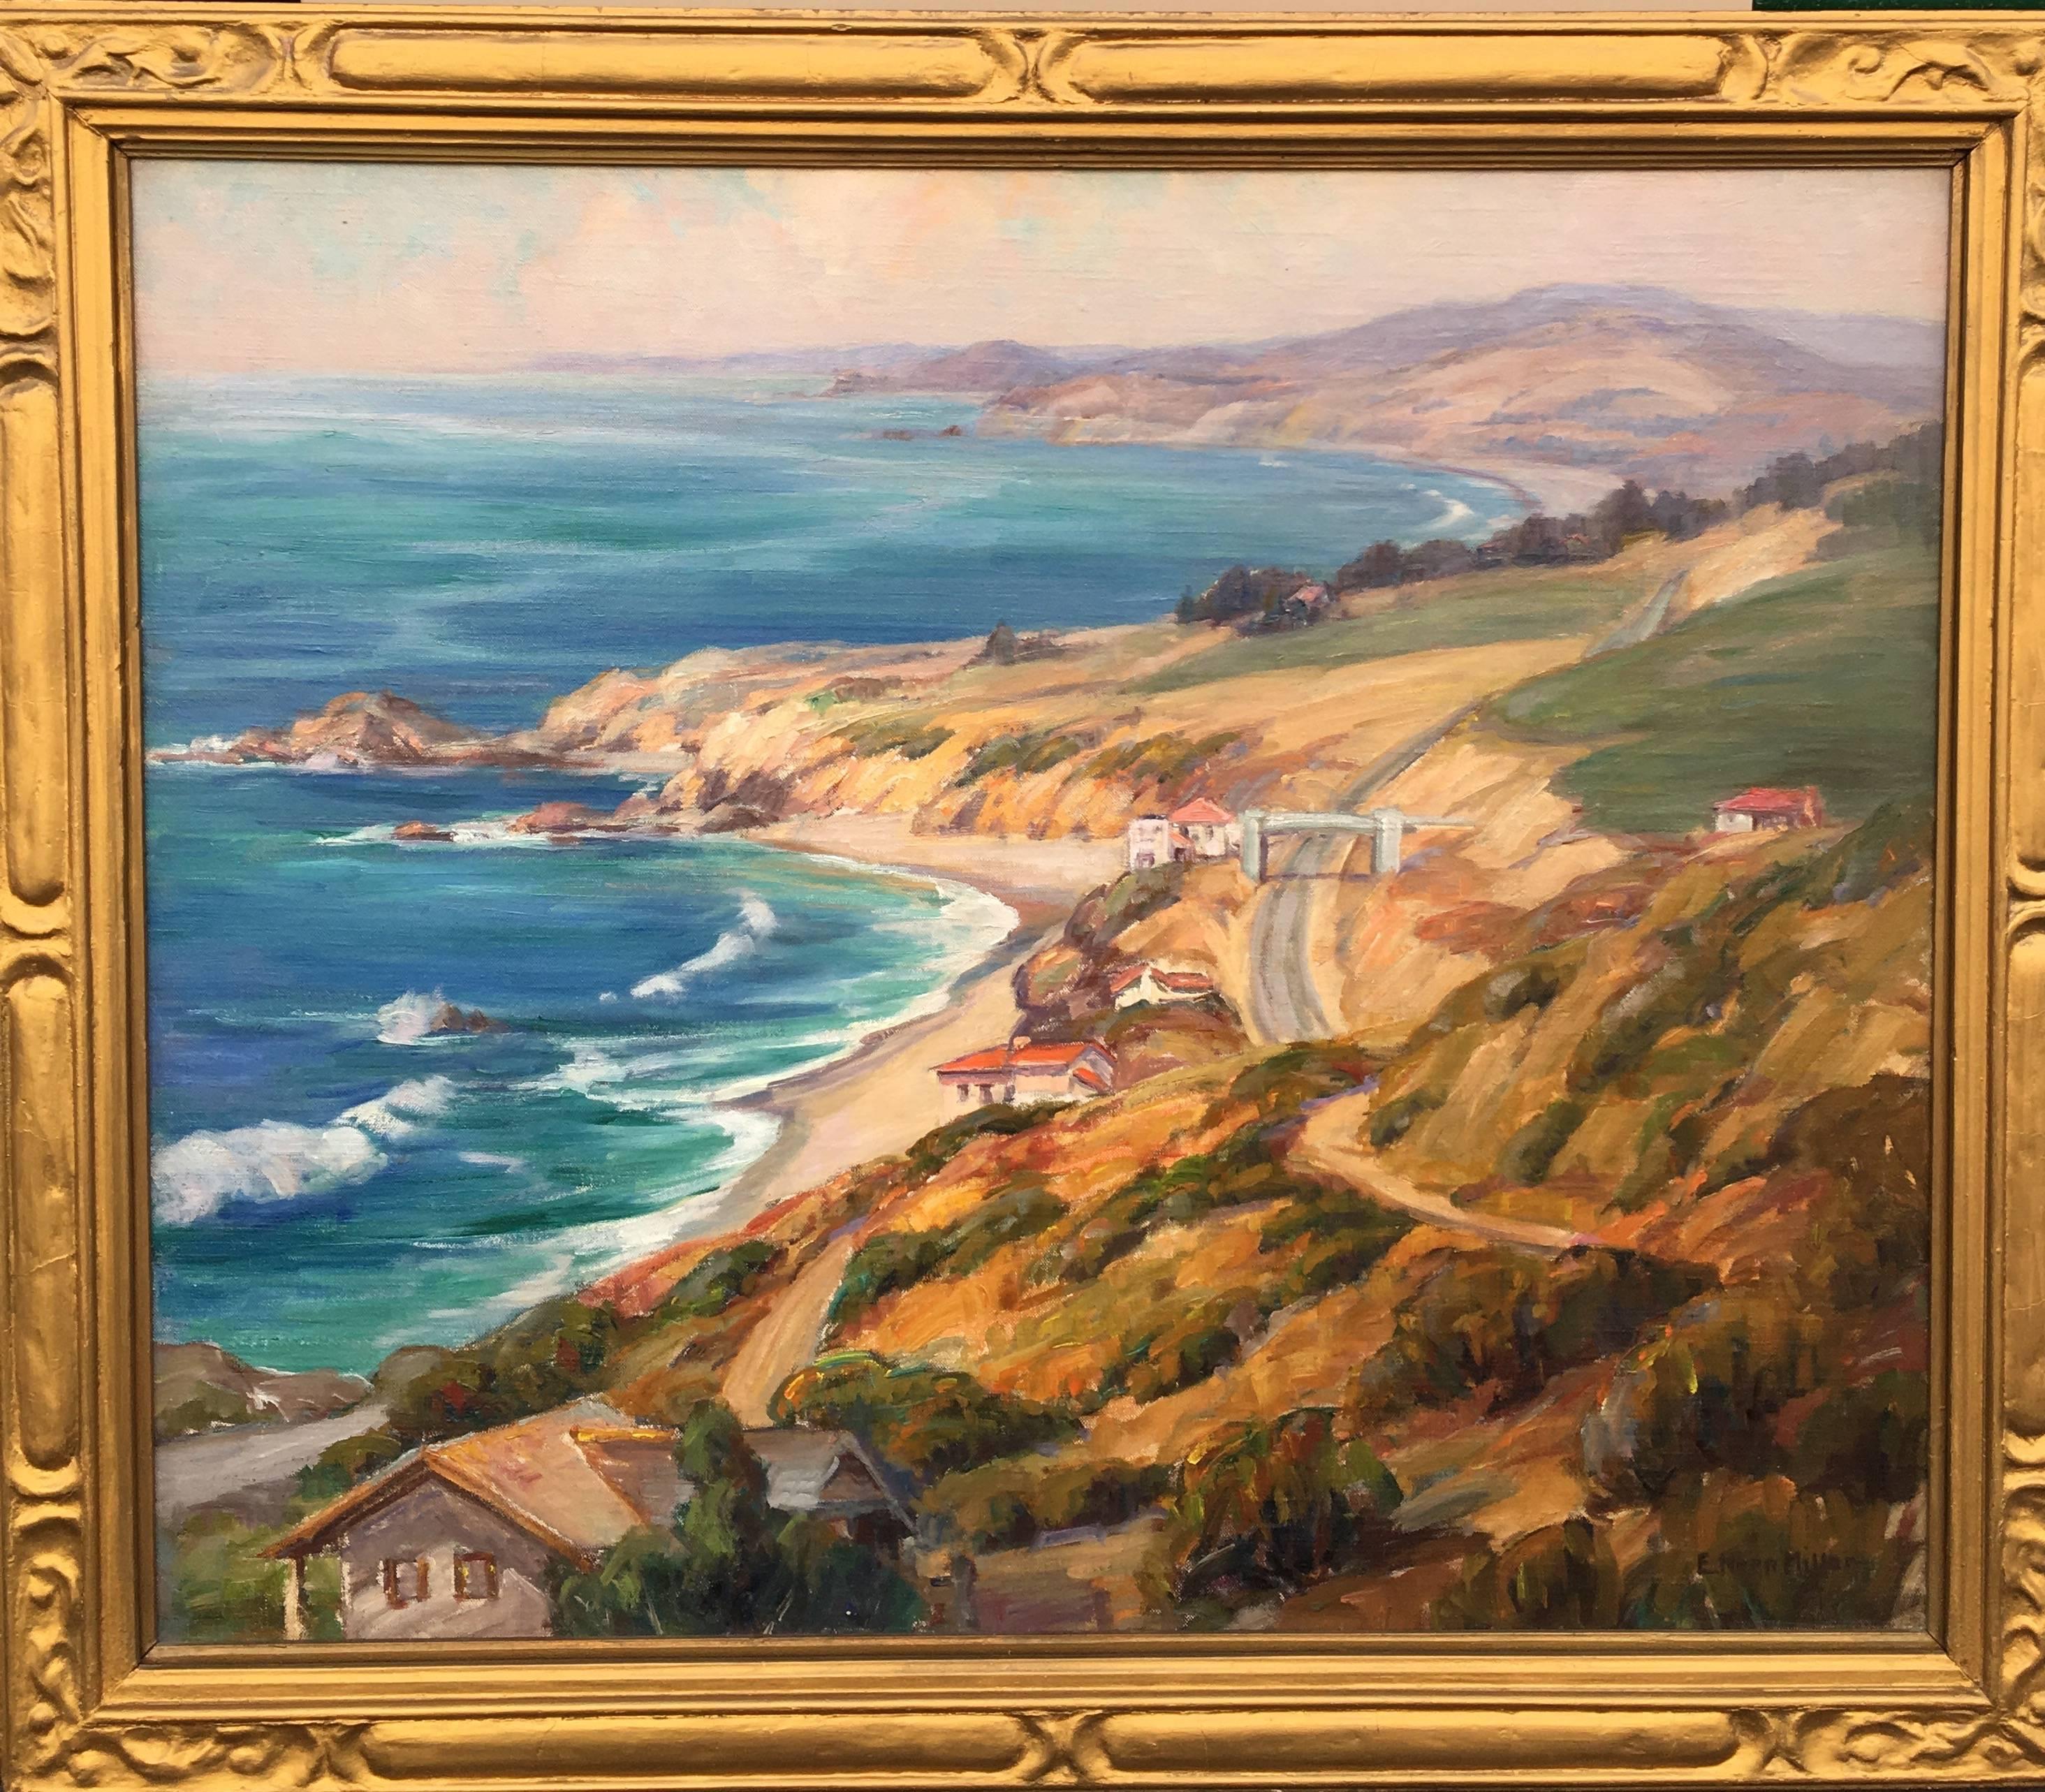 Evylyna Nunn Miller Landscape Painting - California Coastline